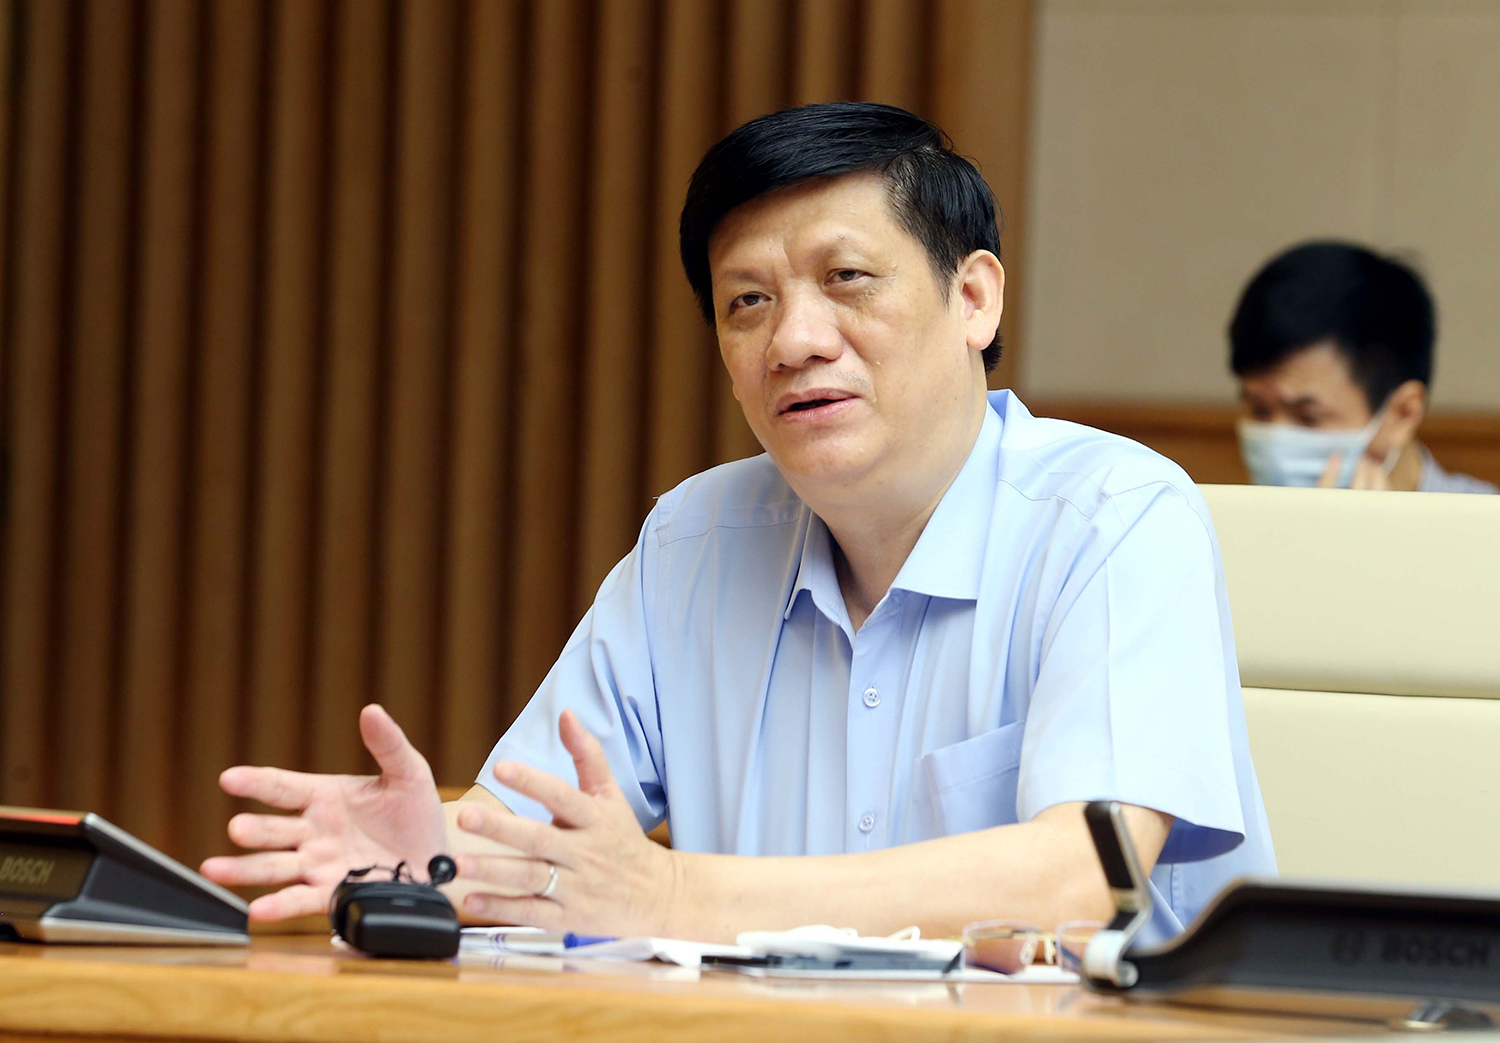 Bộ trưởng Bộ Y tế Nguyễn Thanh Long cho biết ngành y tế đang tích cực chuẩn bị vật tư, trang thiết bị chống dịch, không để bị động trong mọi tình huống. Ảnh: VGP/Đình Nam